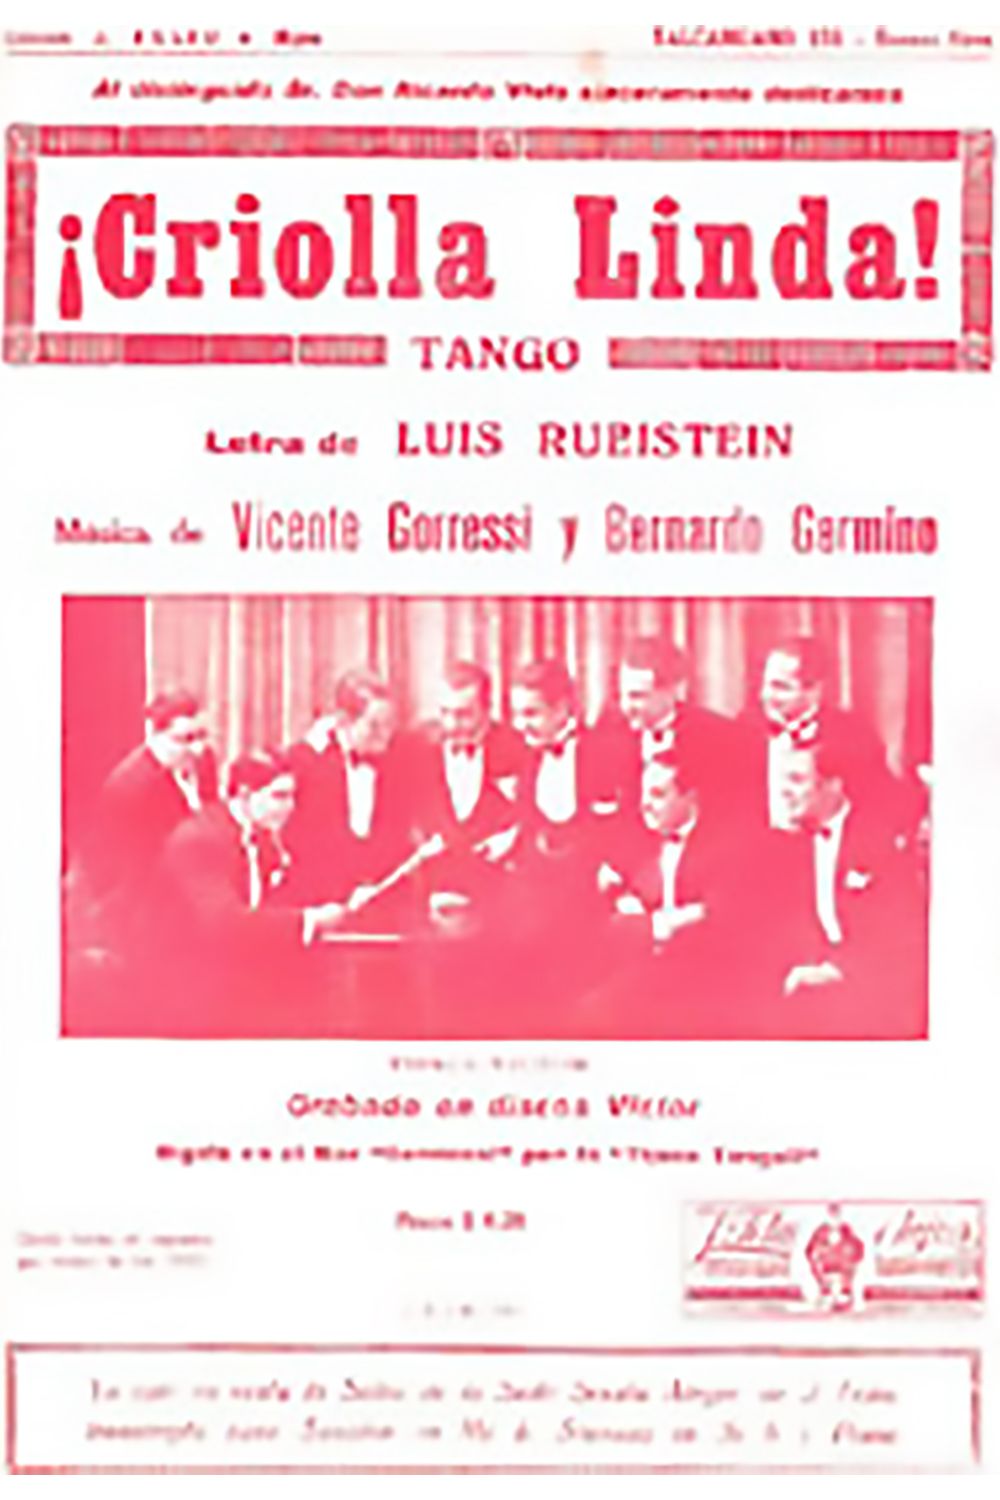 "Criolla linda", tapa de la partitura musical del tango.